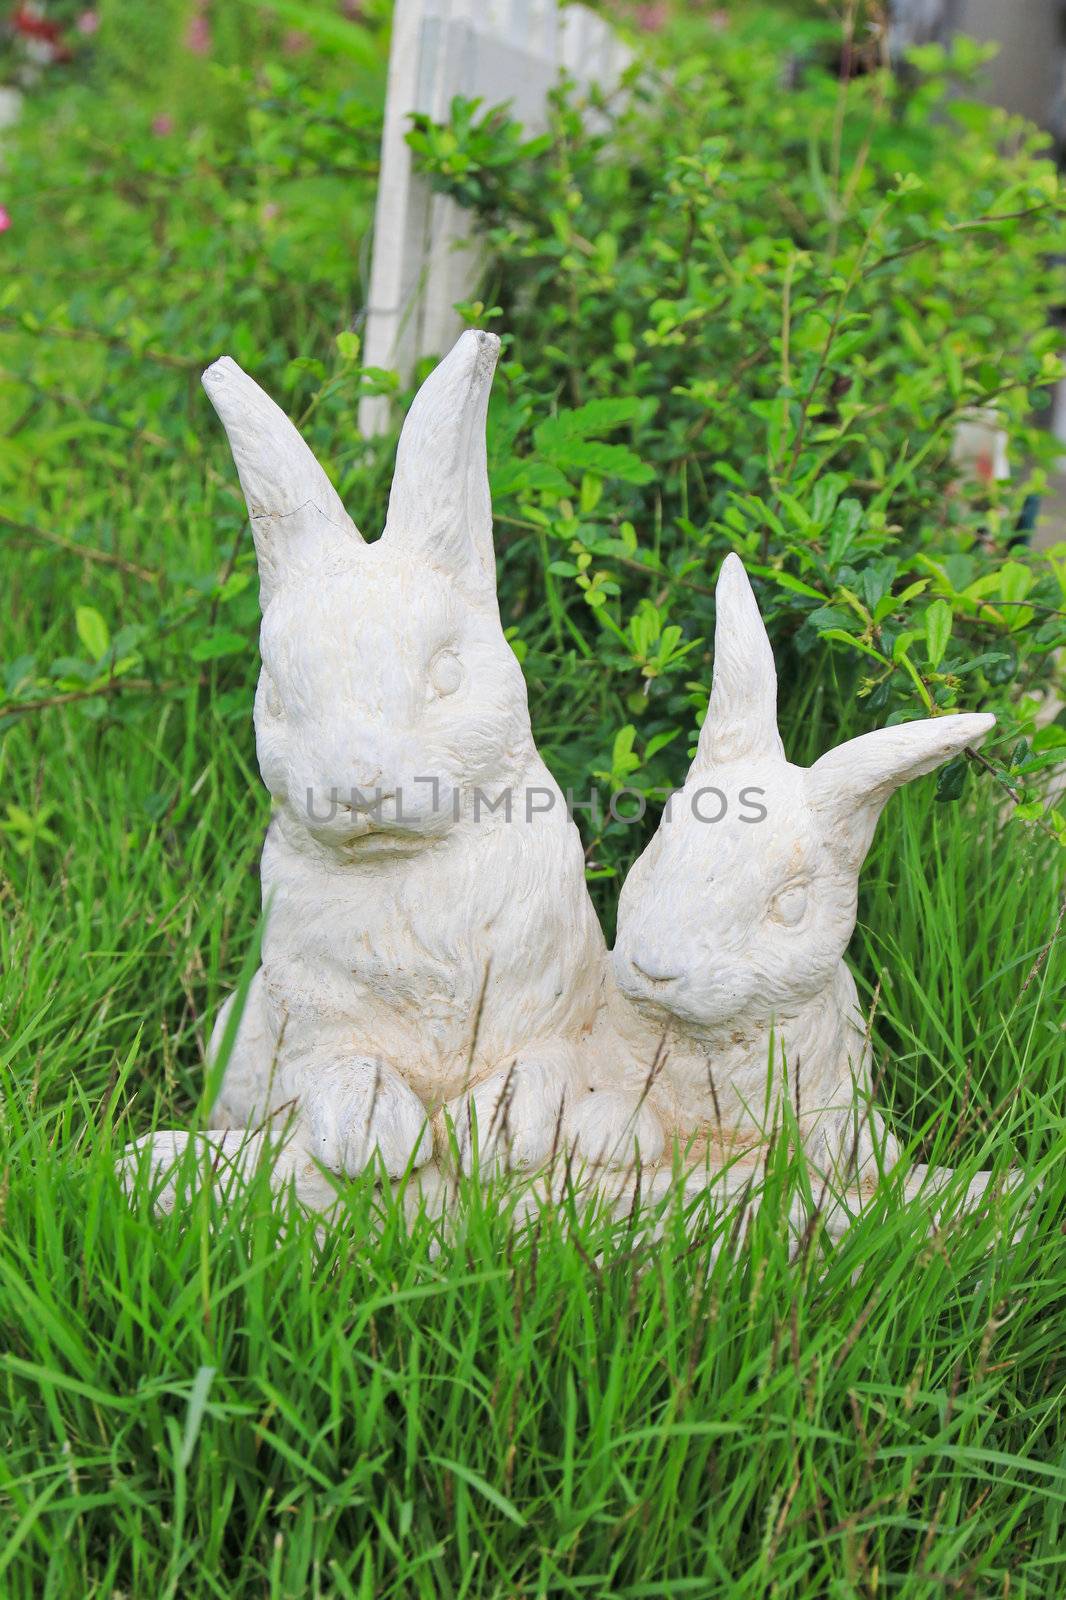 Statue of rabbit by nuchylee